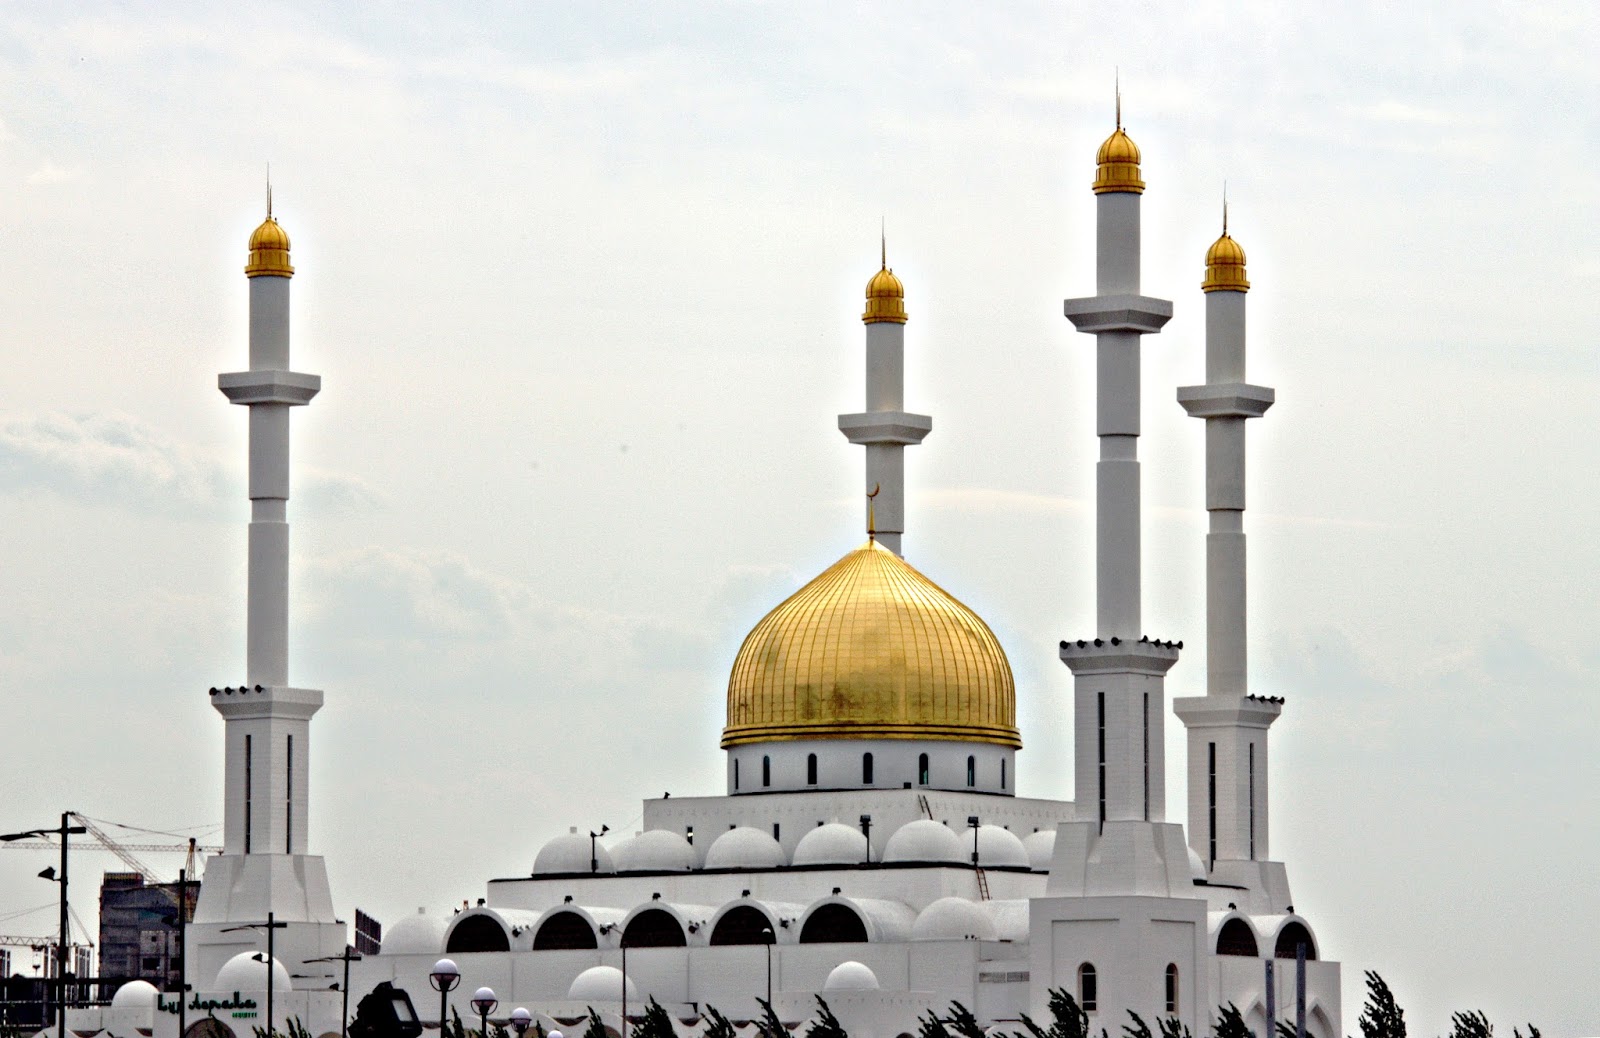 gambar: Gambar Masjid Lengkap